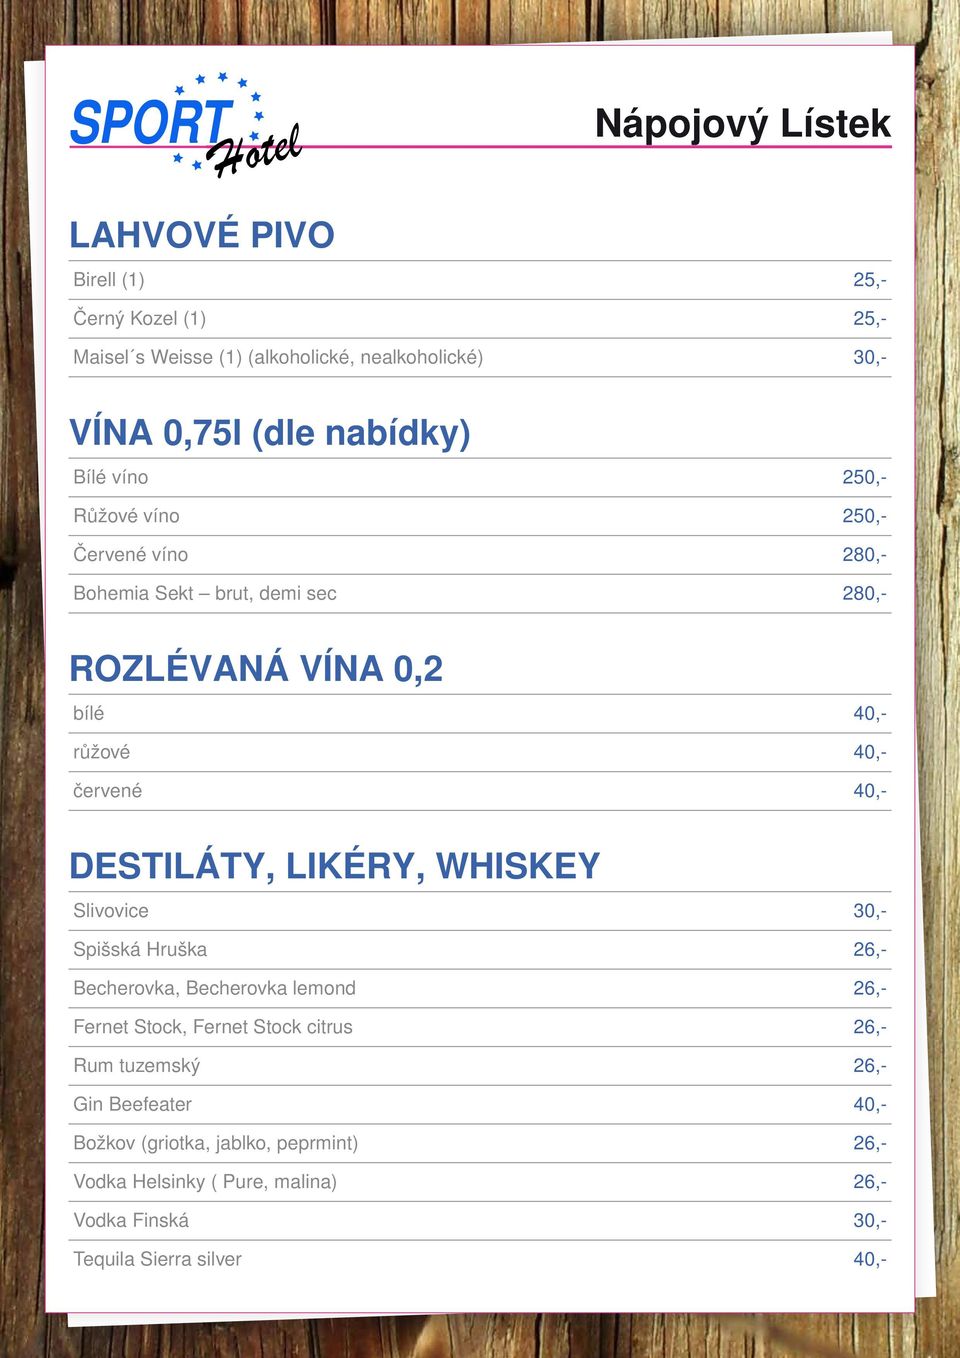 DESTILÁTY, LIKÉRY, WHISKEY Slivovice 30,- Spišská Hruška 26,- Becherovka, Becherovka lemond 26,- Fernet Stock, Fernet Stock citrus 26,- Rum